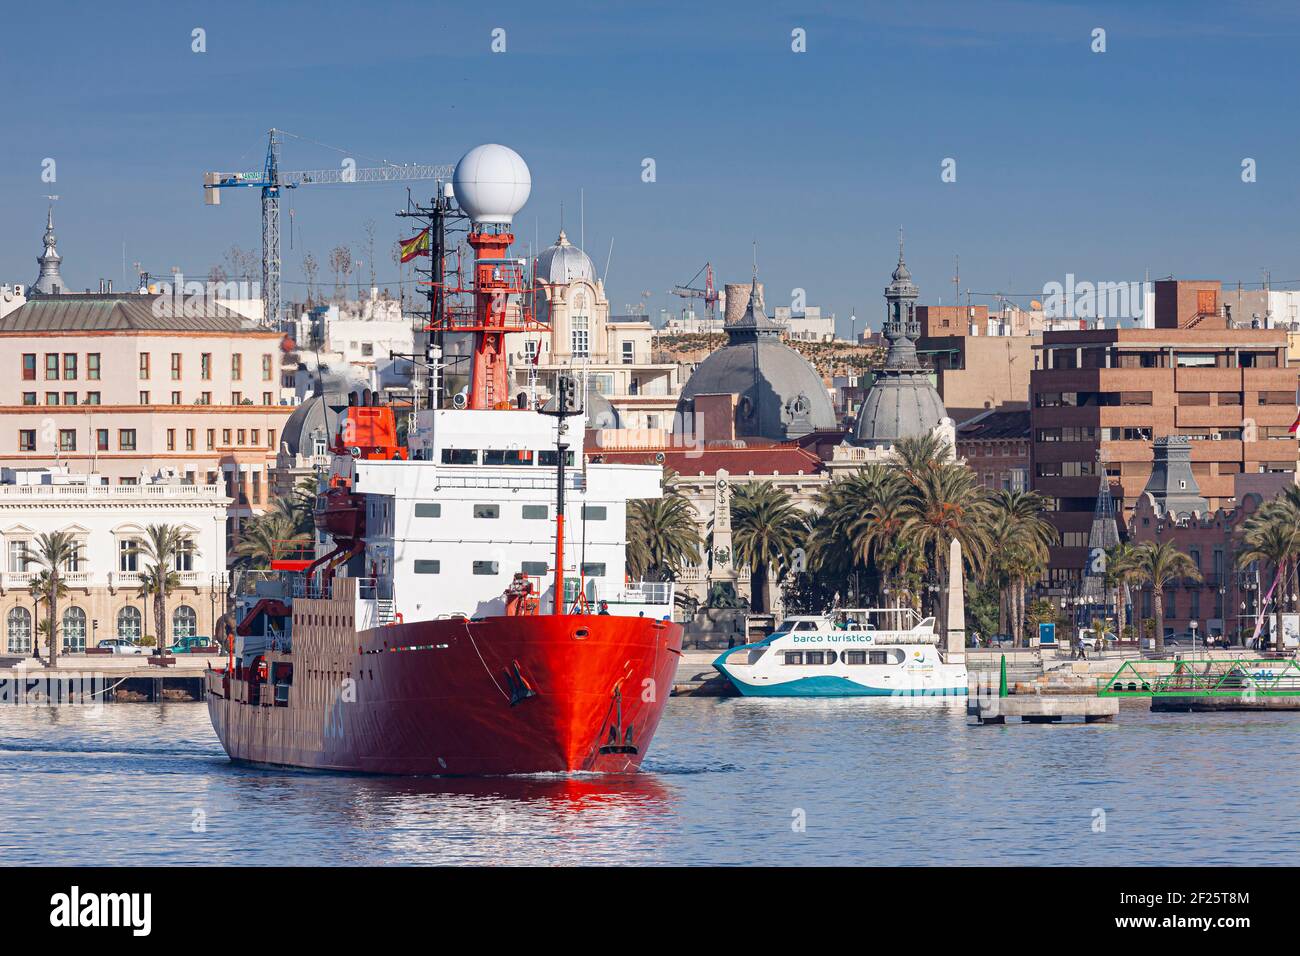 Navire océanographique de la Marine espagnole partant du port de Cartagena. ABEL F. ROS/ALAMY Banque D'Images